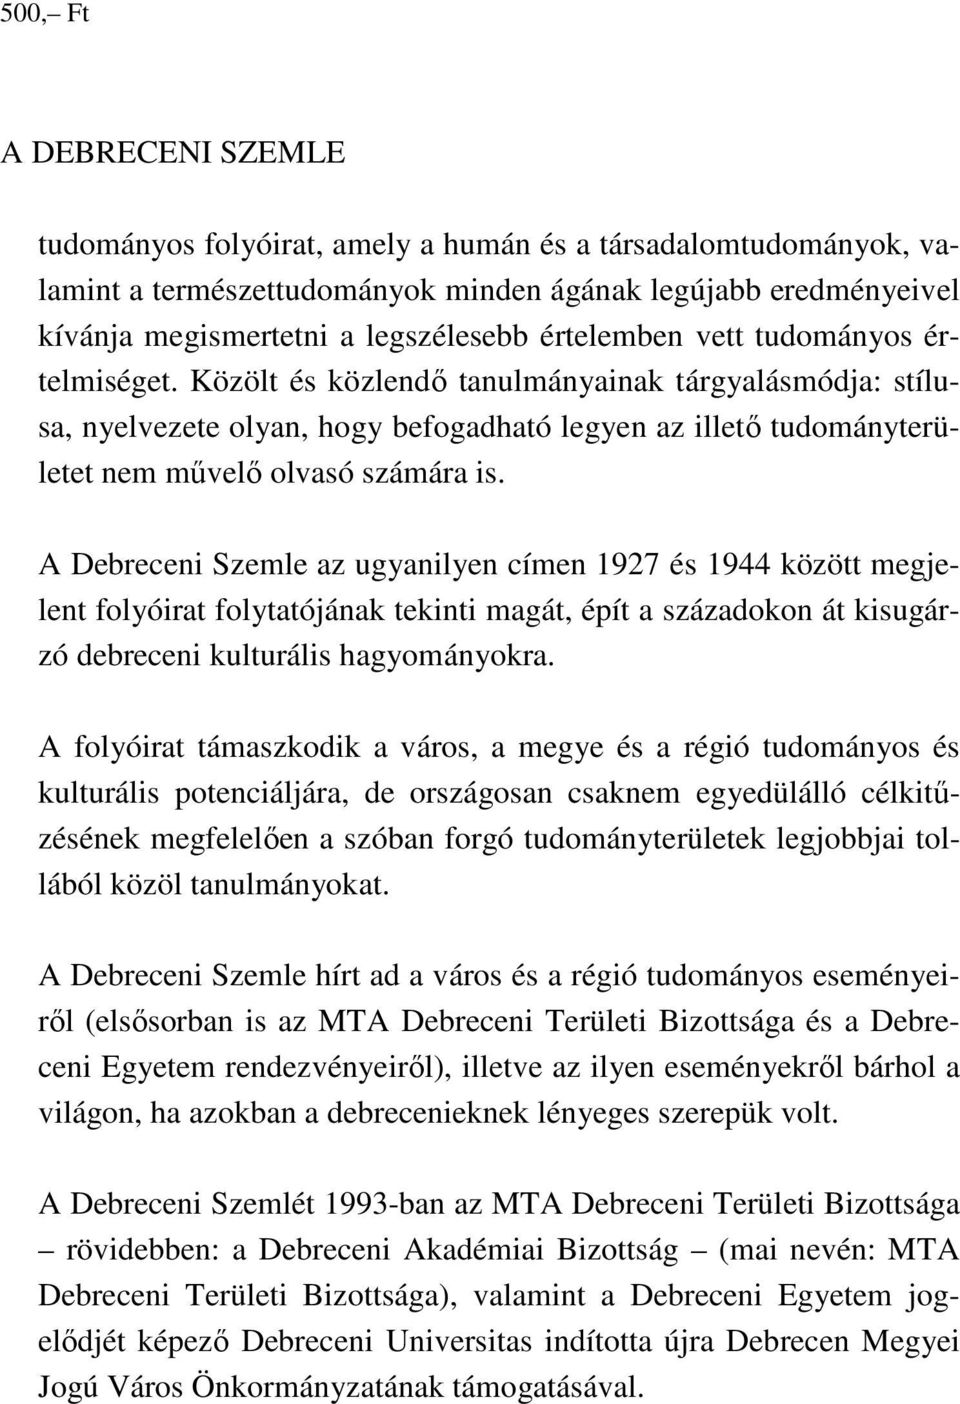 A Debreceni Szemle az ugyanilyen címen 1927 és 1944 között megjelent folyóirat folytatójának tekinti magát, épít a századokon át kisugárzó debreceni kulturális hagyományokra.